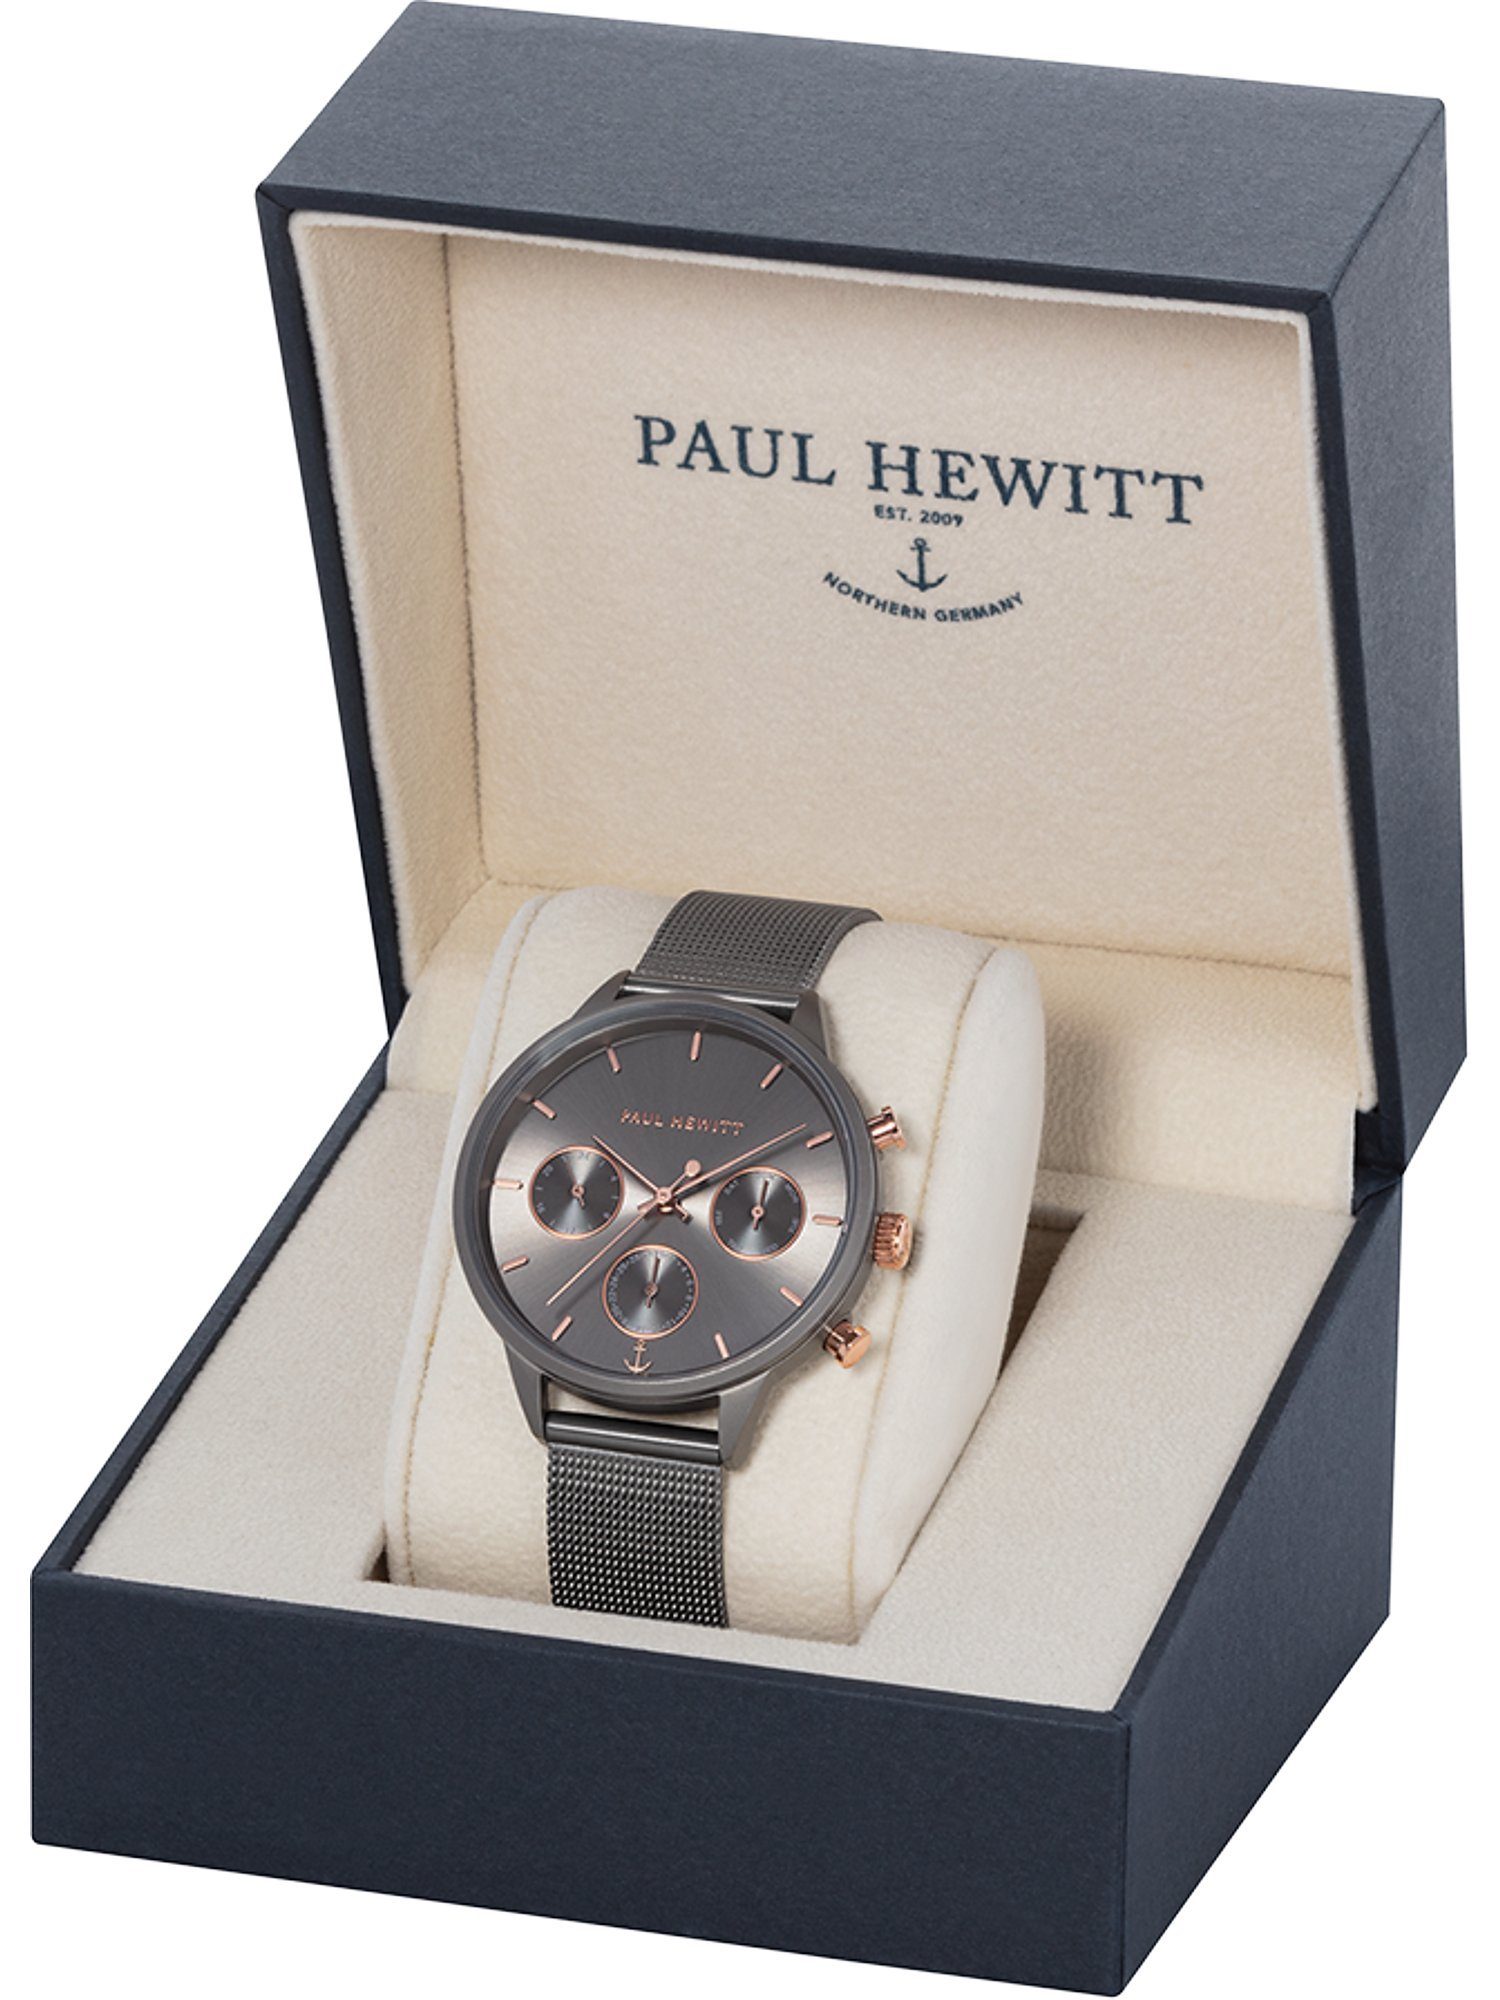 PAUL HEWITT Chronograph Paul Hewitt Damen-Uhren Analog Quarz